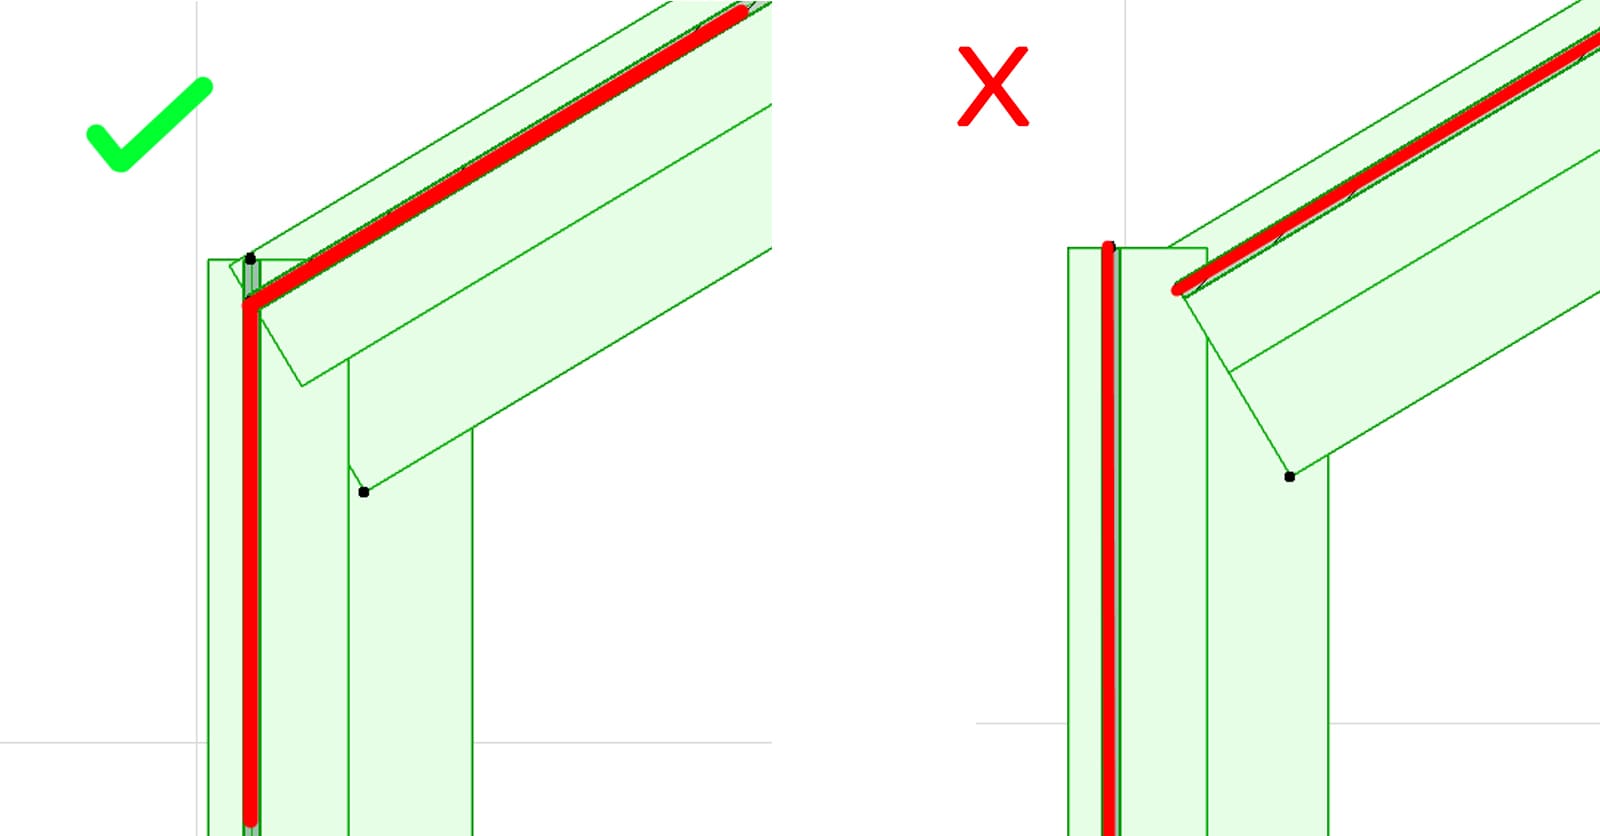  Archicad -Jak połączyć dwie przegrody strukturalne pod różnym kątem jednym profilem? - 04